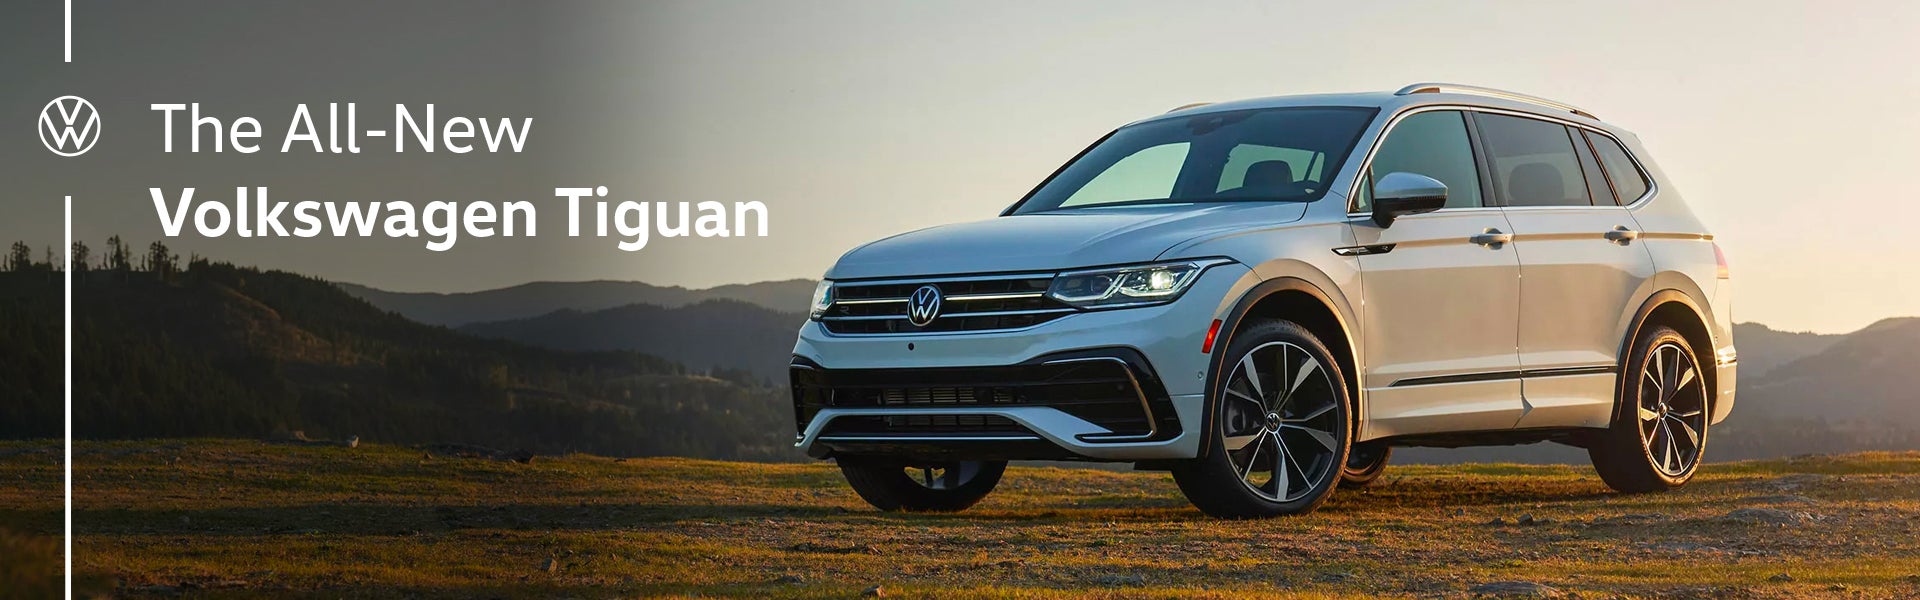 The All-New Volkswagen Tiguan